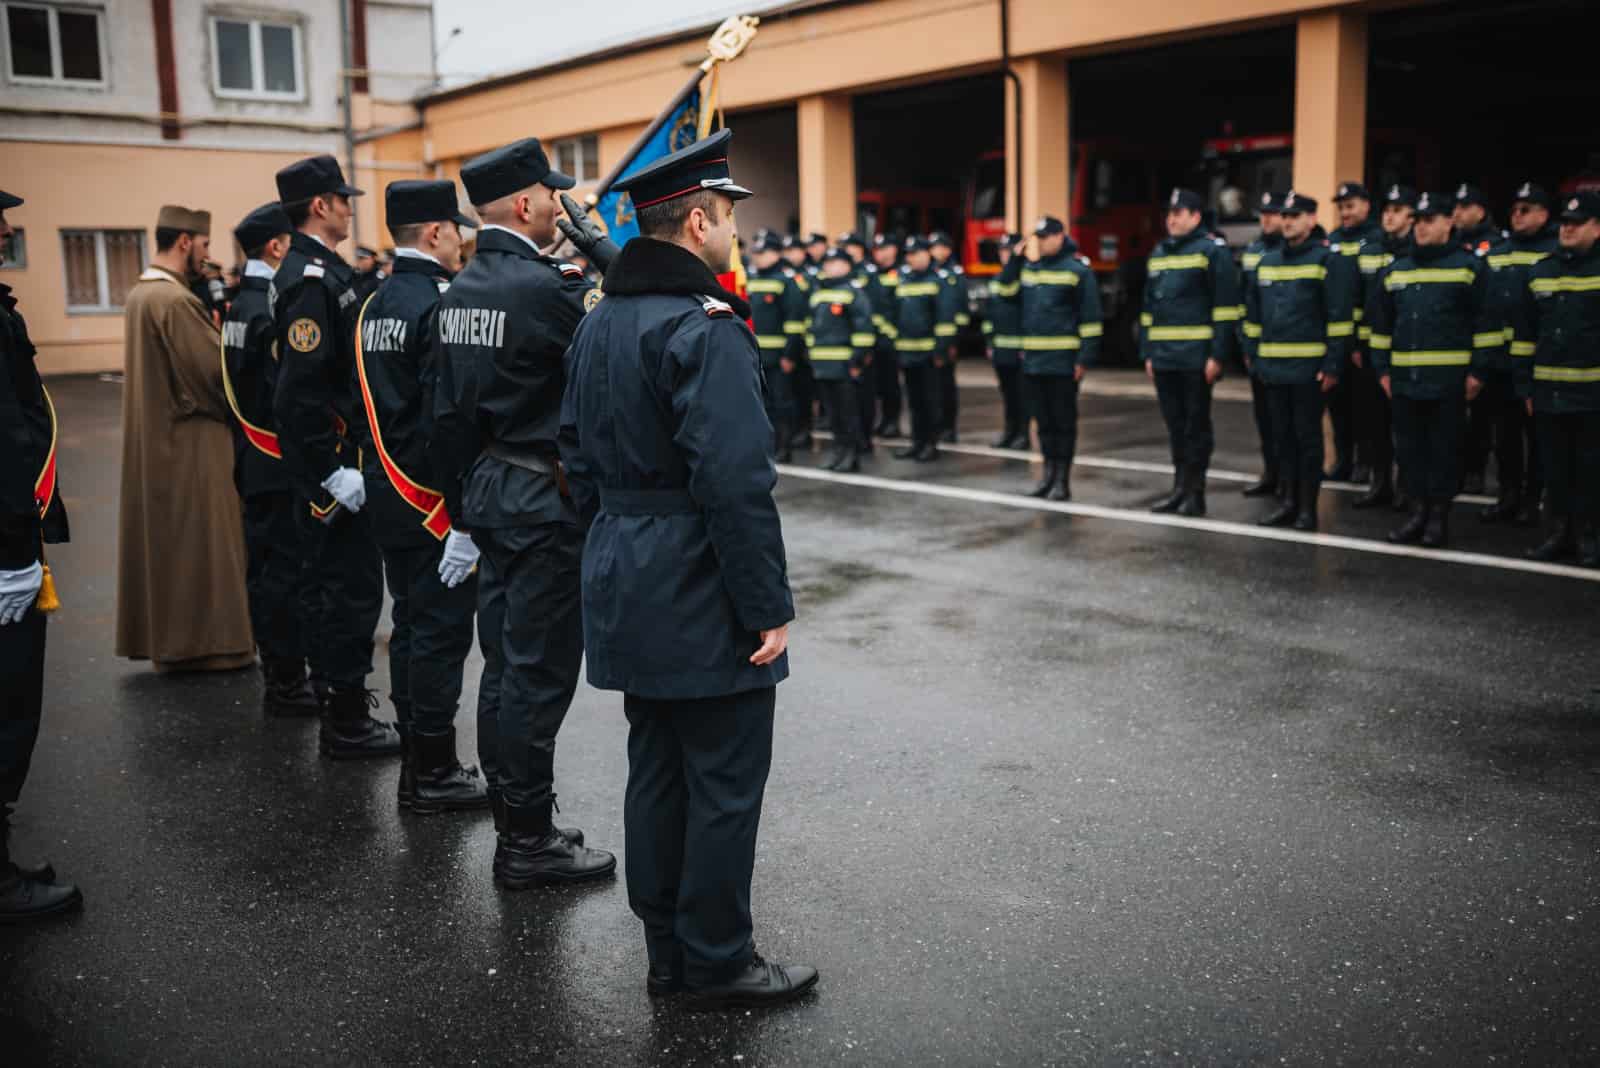 foto: ceremonie la isu sibiu – șaizeci de pompieri au depus jurământul